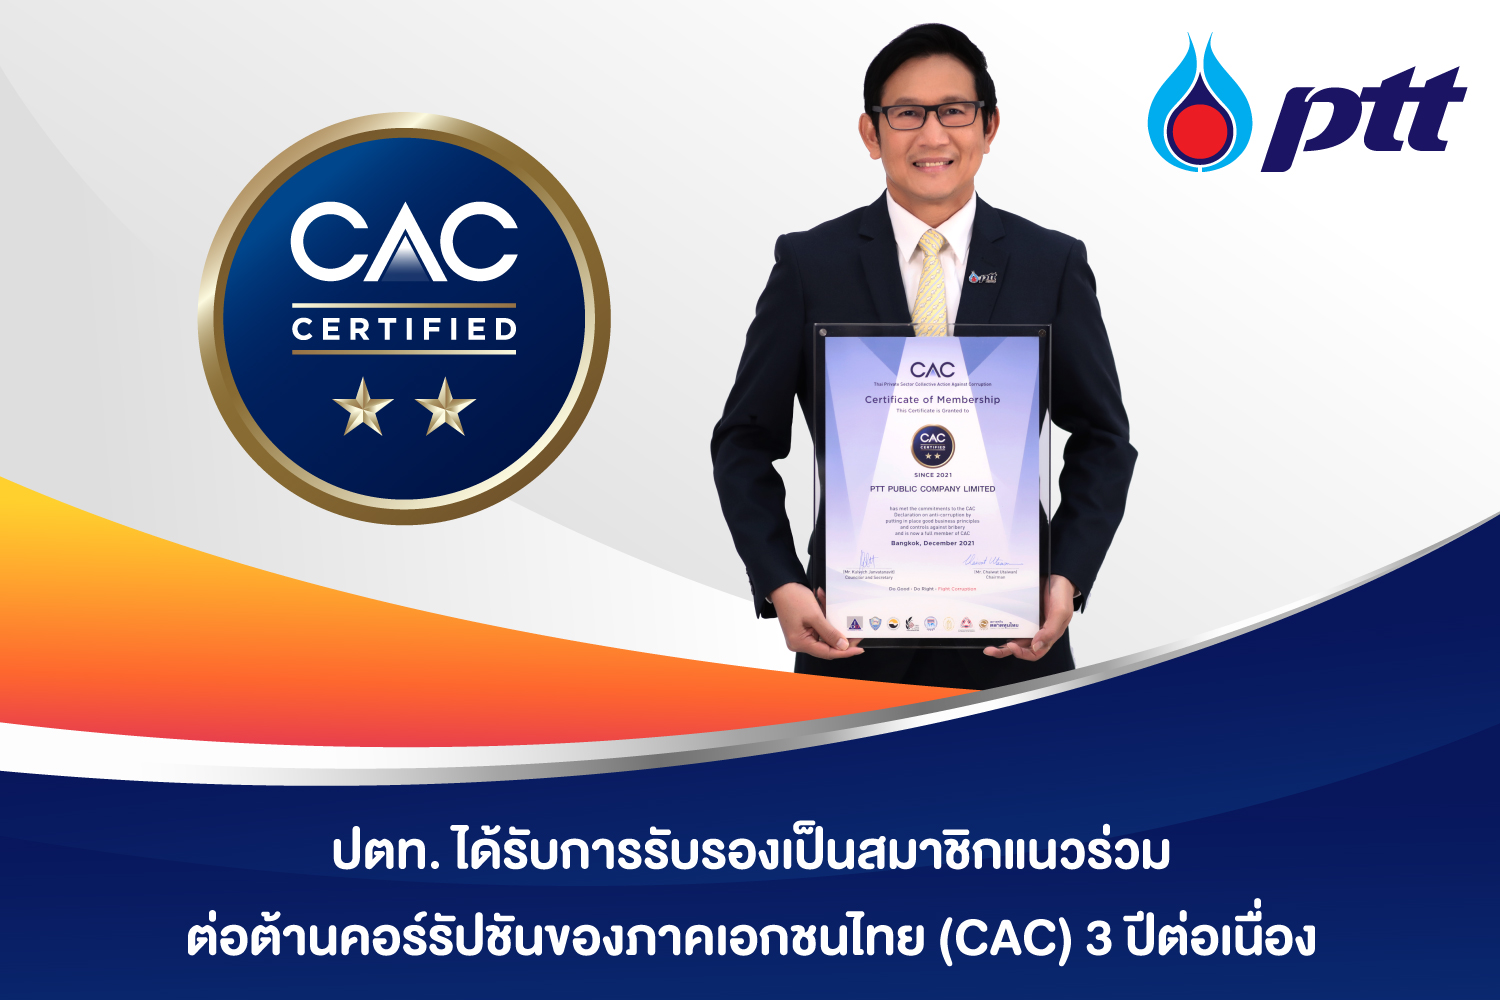 ปตท. ได้รับการรับรองเป็นสมาชิกแนวร่วมต่อต้านคอร์รัปชันของภาคเอกชนไทย (CAC) 3 ปีต่อเนื่อง